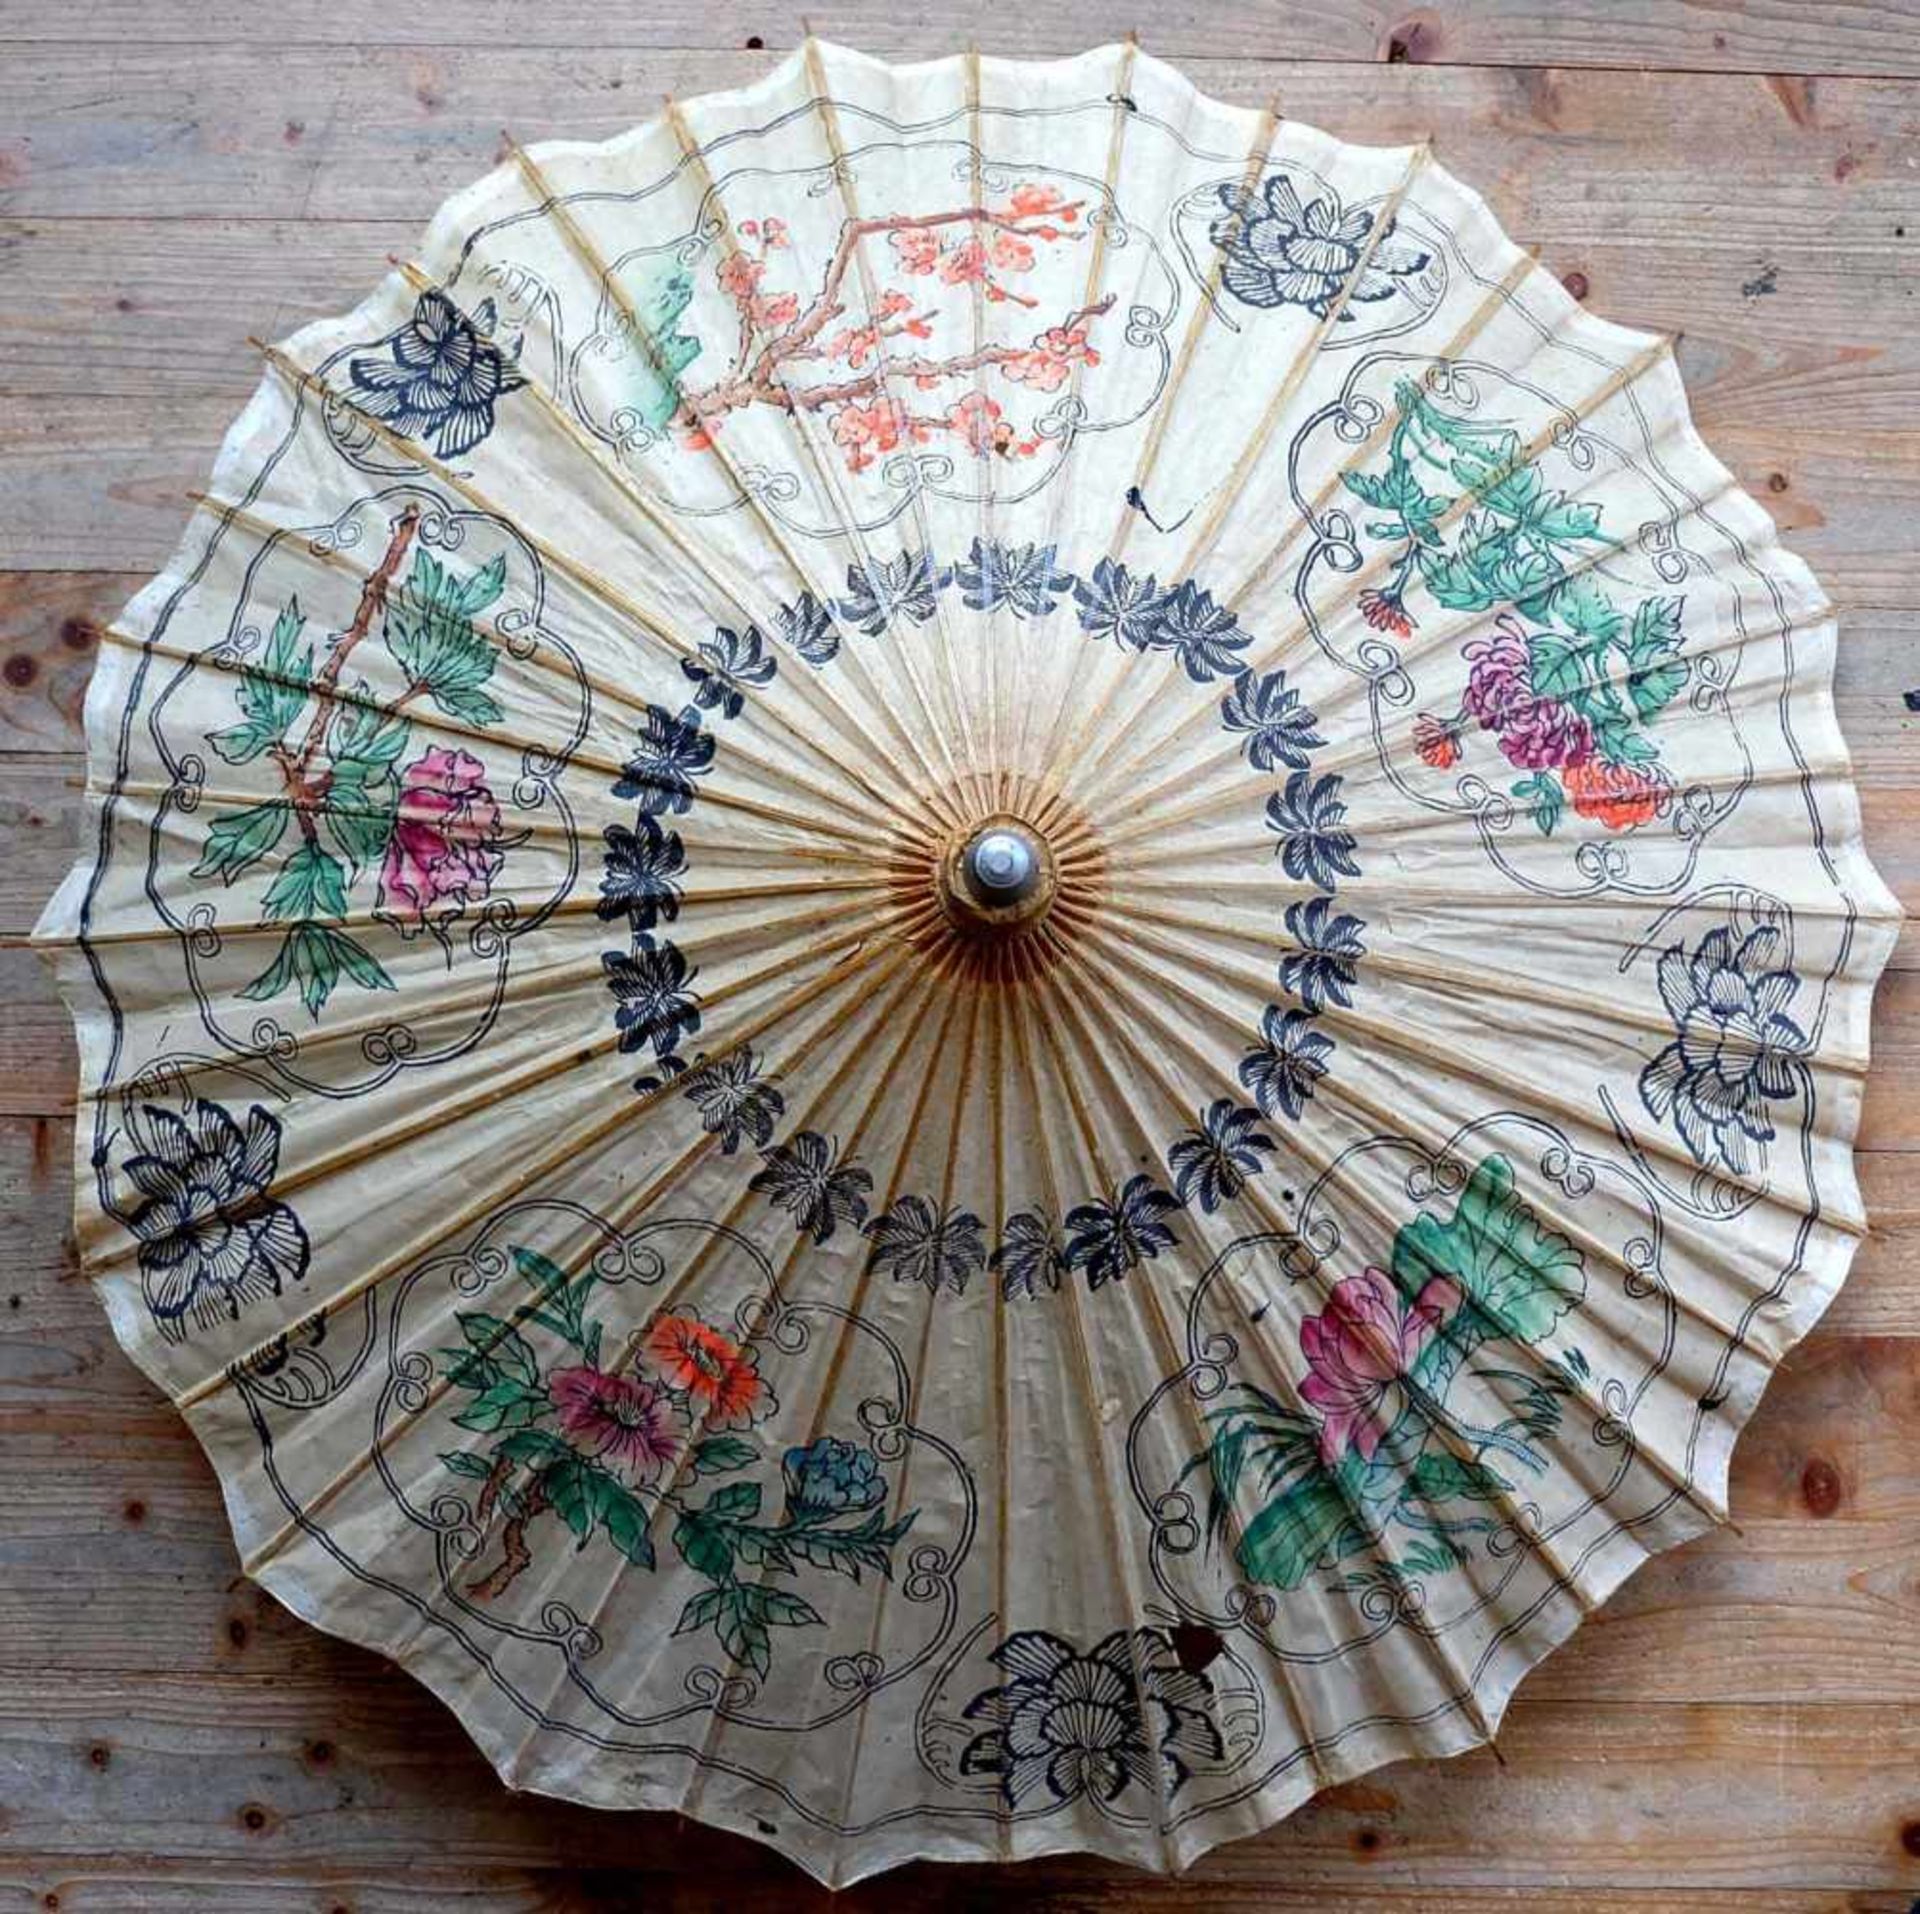 DEKOSCHIRM, China, Papier/ Bambus, colorierter Schablonendekor, ca. Dm 90 cm, min. besch.,